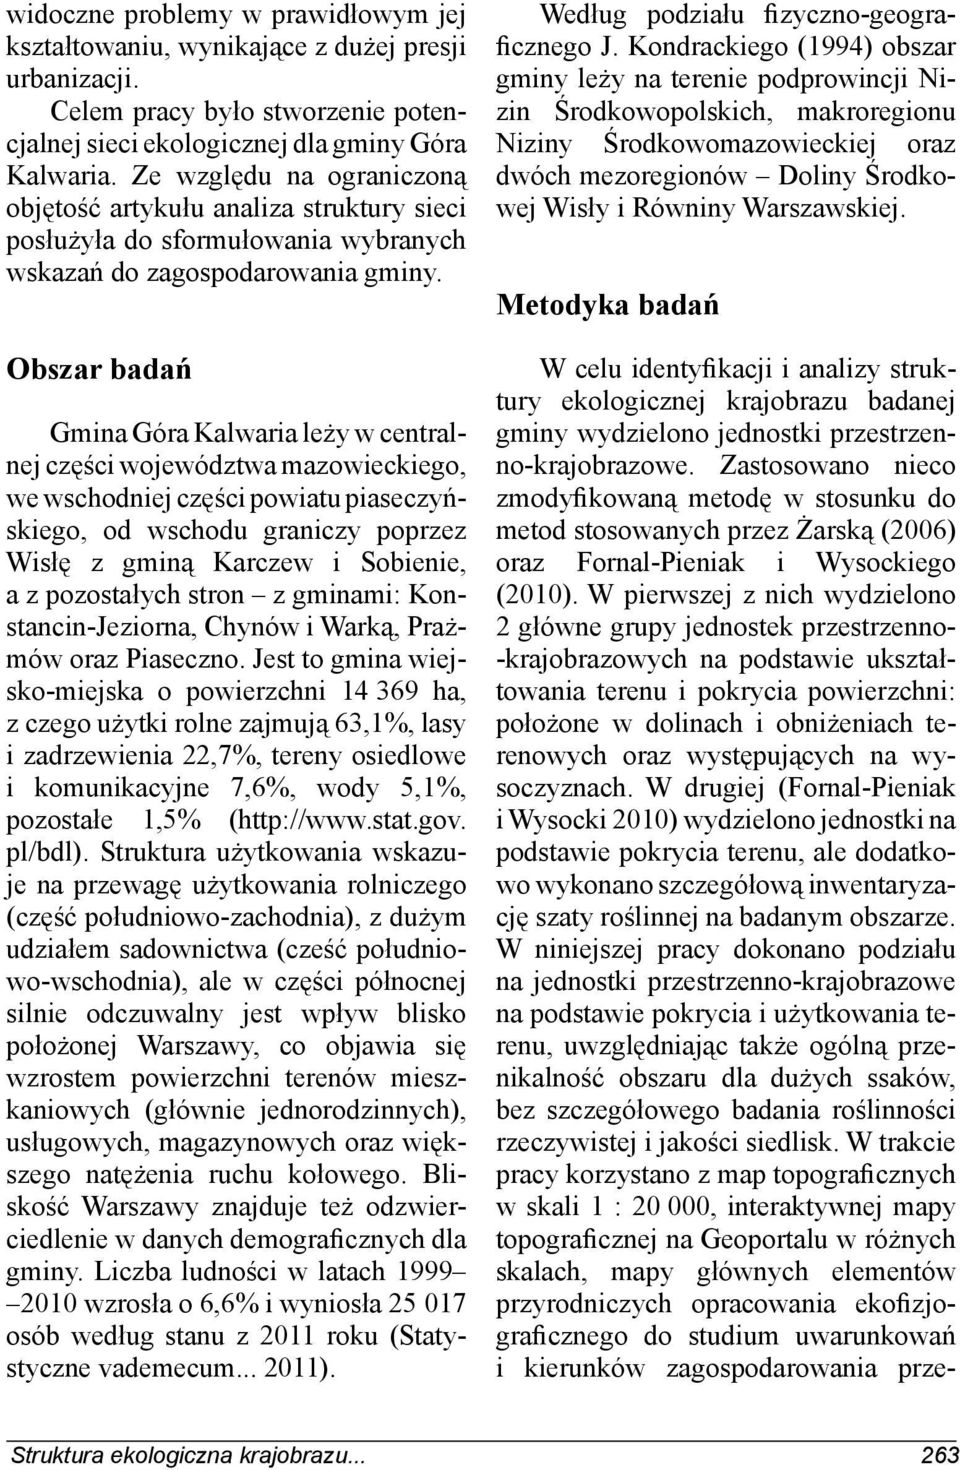 Obszar badań Gmina Góra Kalwaria leży w centralnej części województwa mazowieckiego, we wschodniej części powiatu piaseczyńskiego, od wschodu graniczy poprzez Wisłę z gminą Karczew i Sobienie, a z